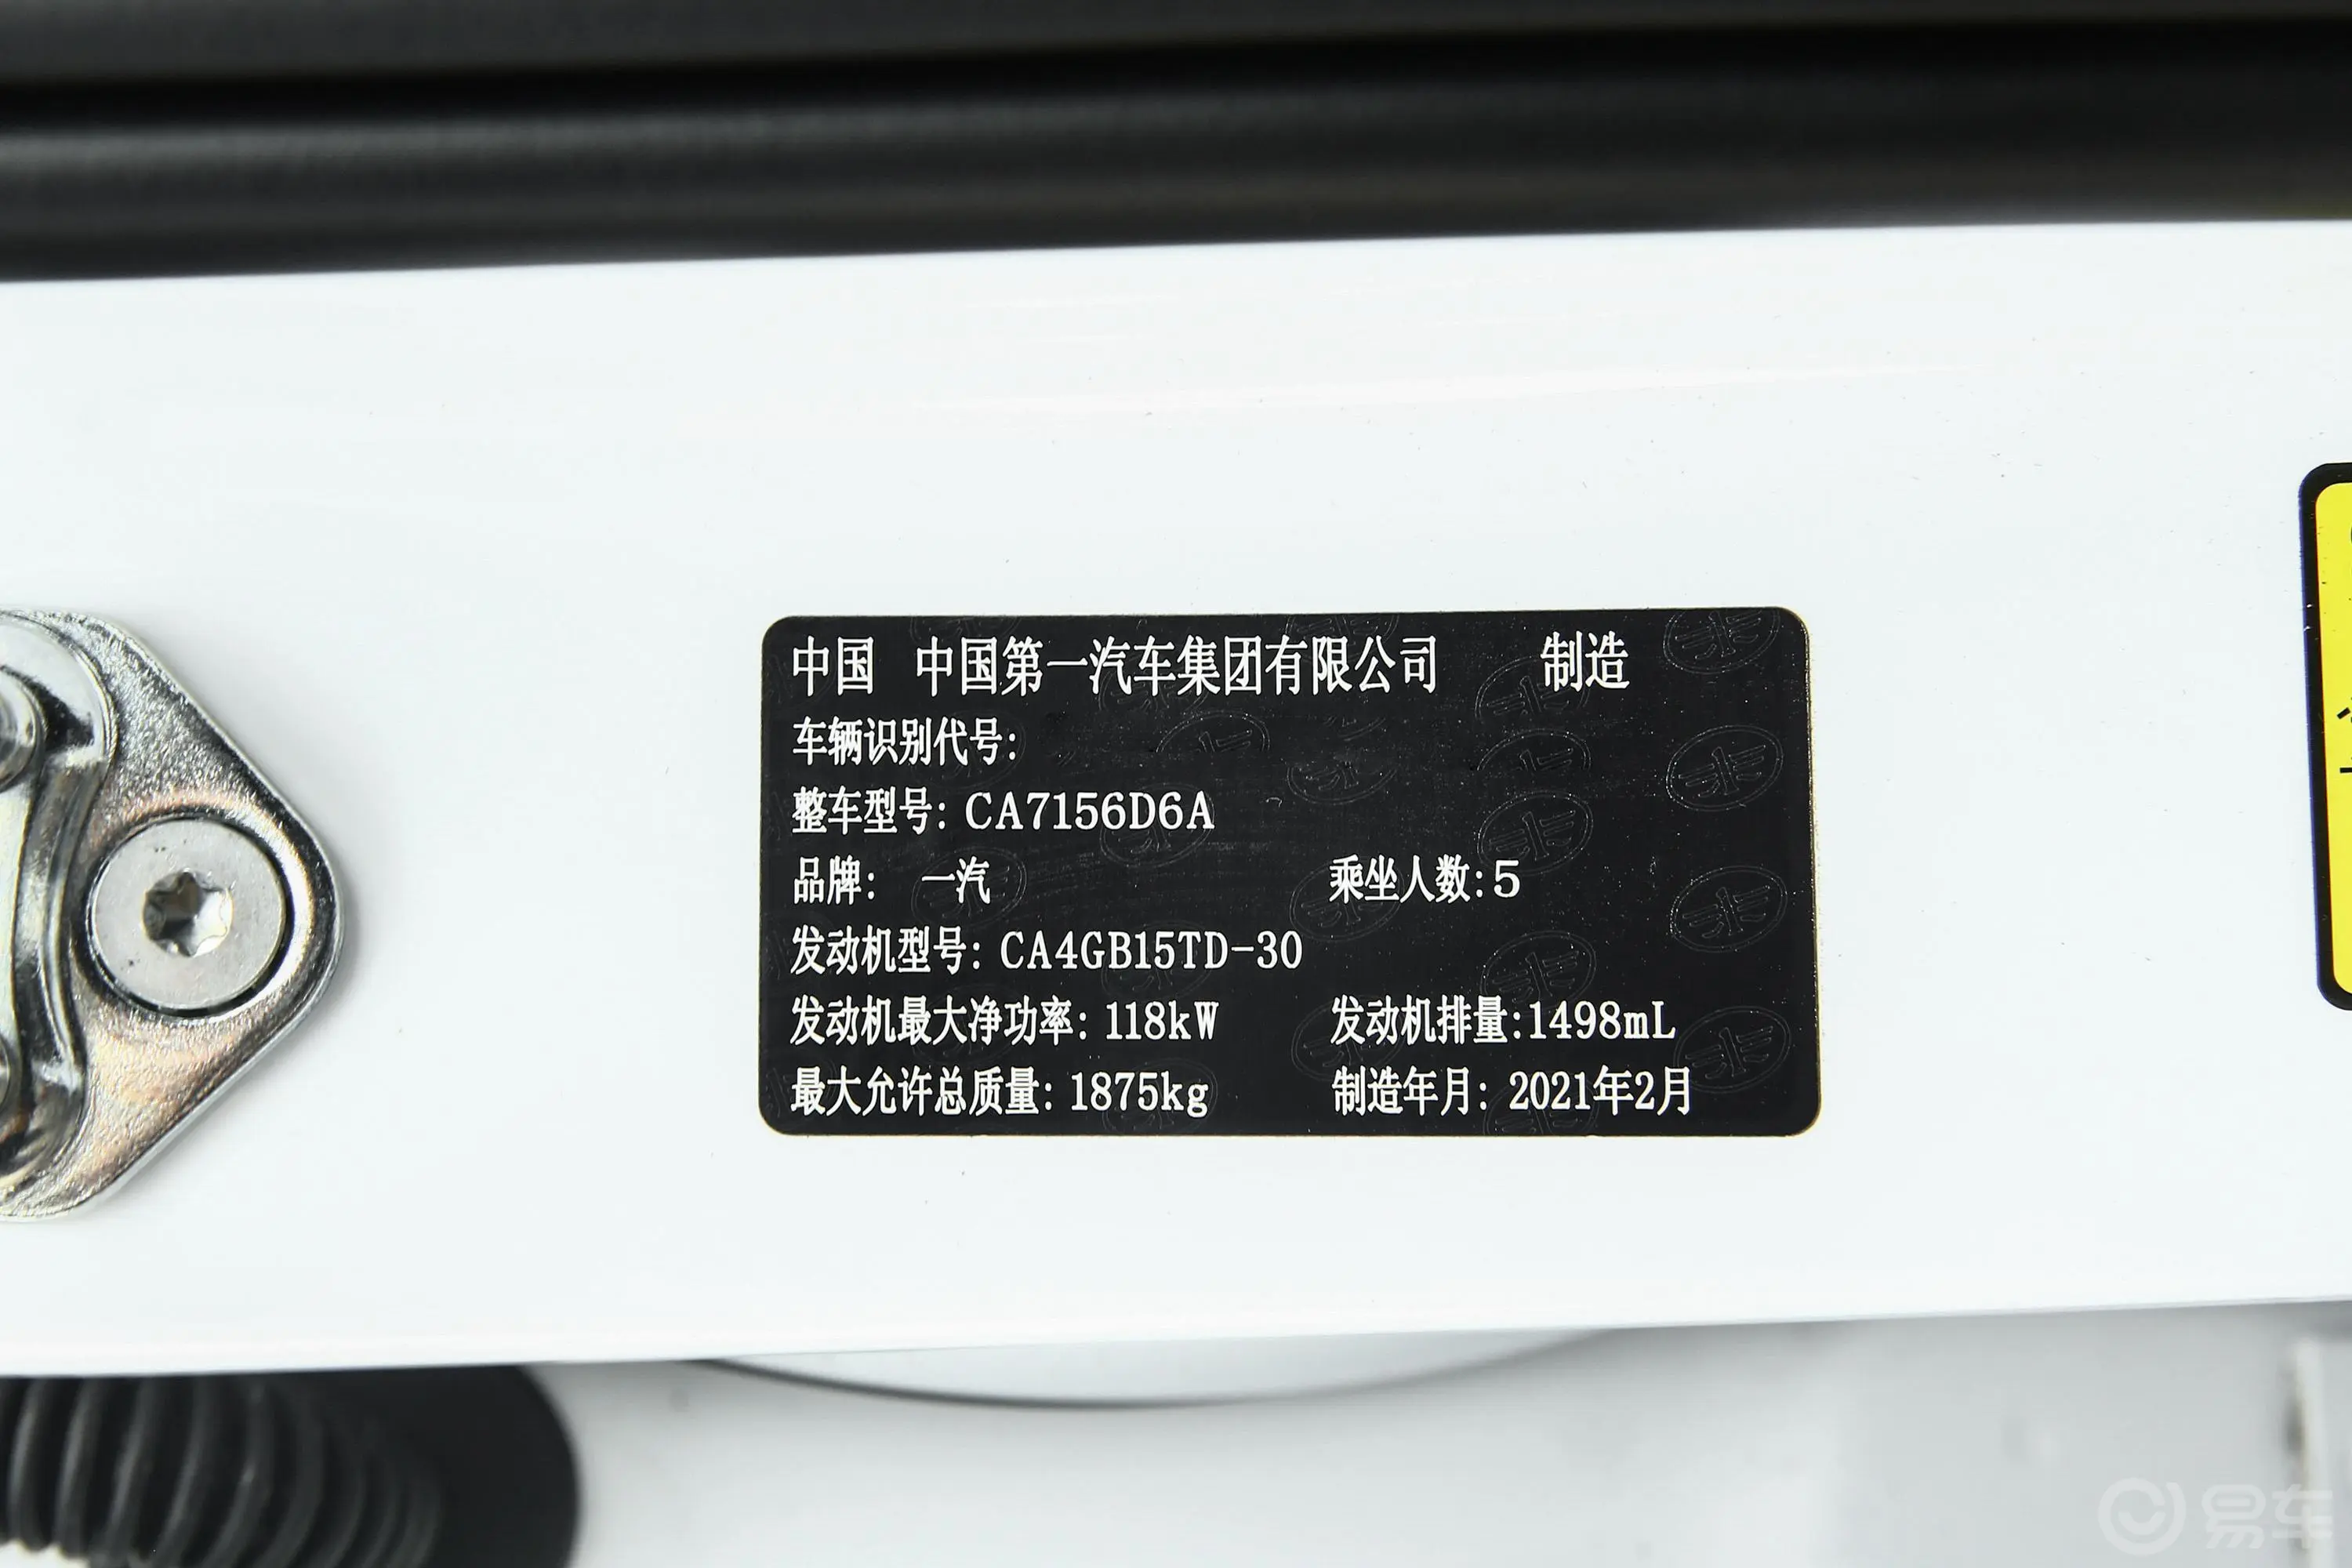 奔腾T551.5T 乐活·豪华版车辆信息铭牌